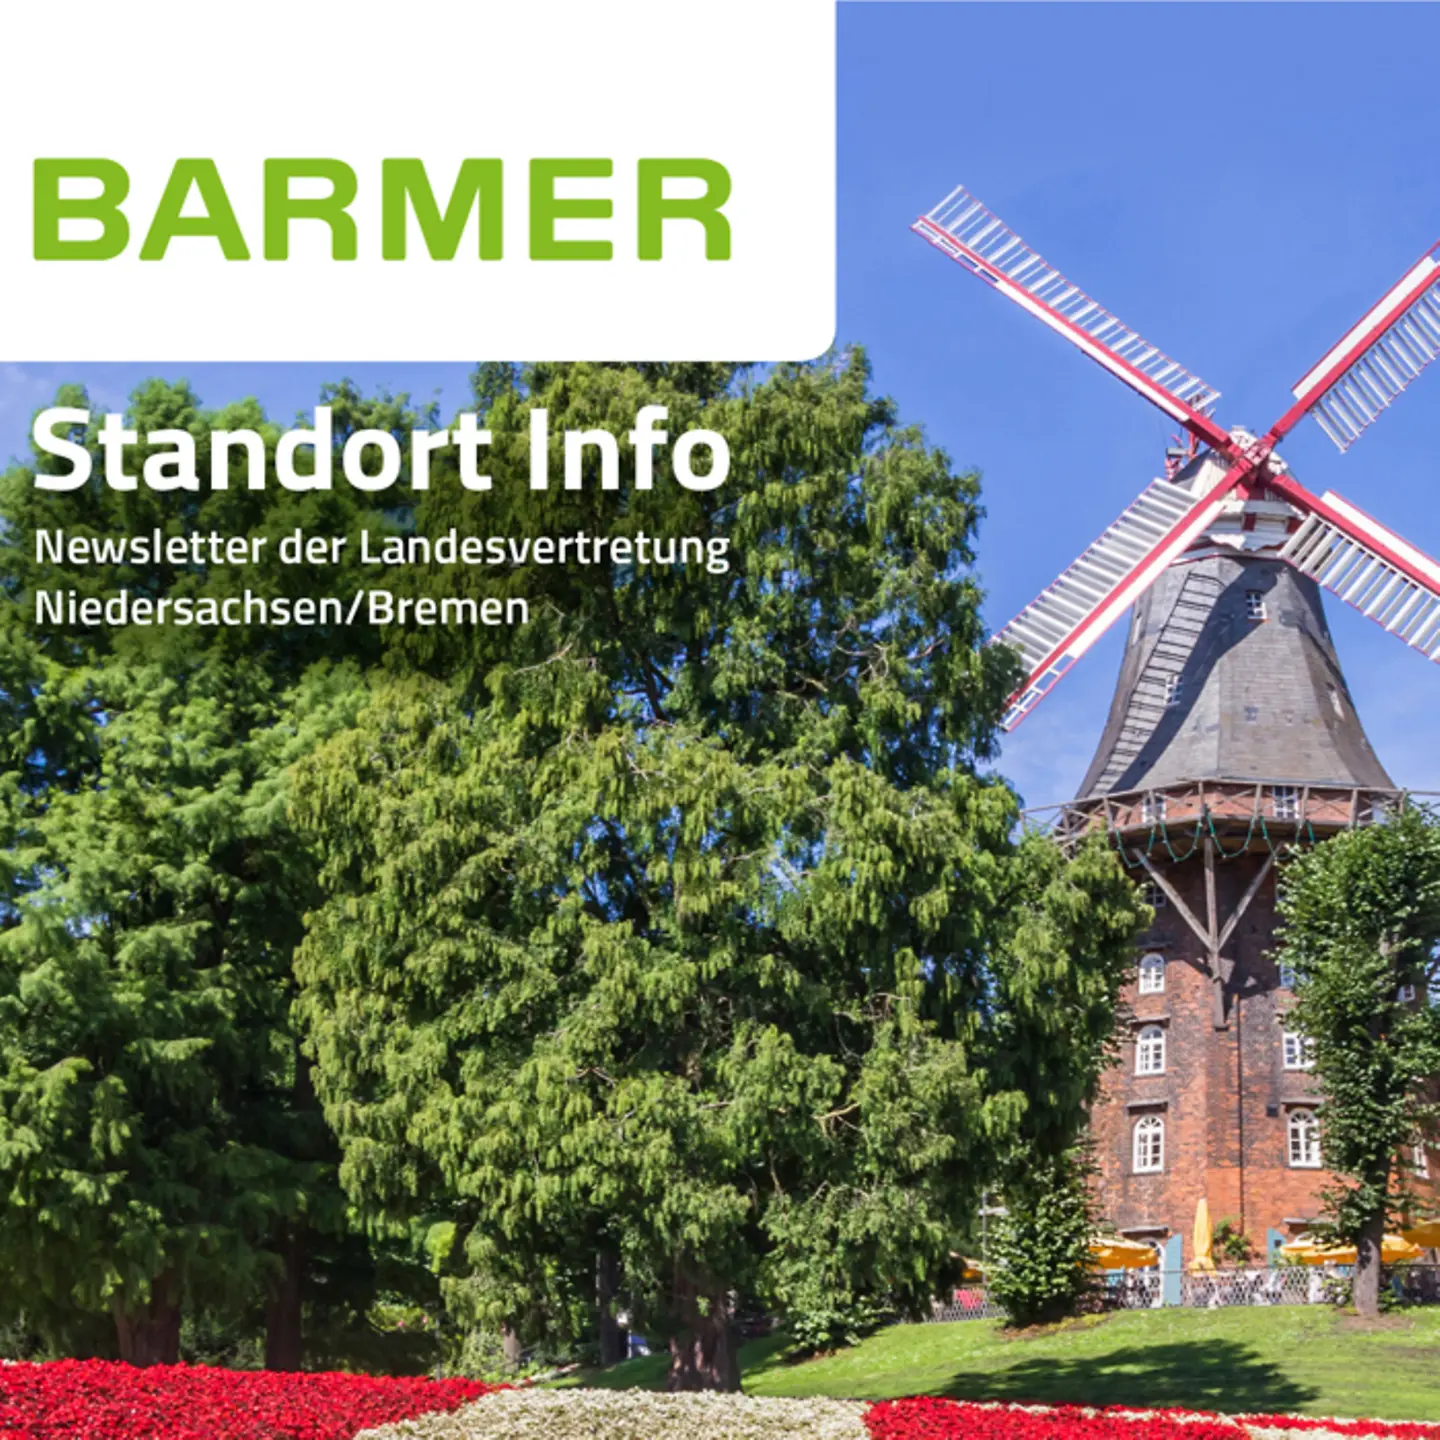 Titelbild STANDORTinfo Niedersachsen-Bremen mit Blick auf eine Landschaft mit der Windmühle "Mühle Am Wall" in Bremen.